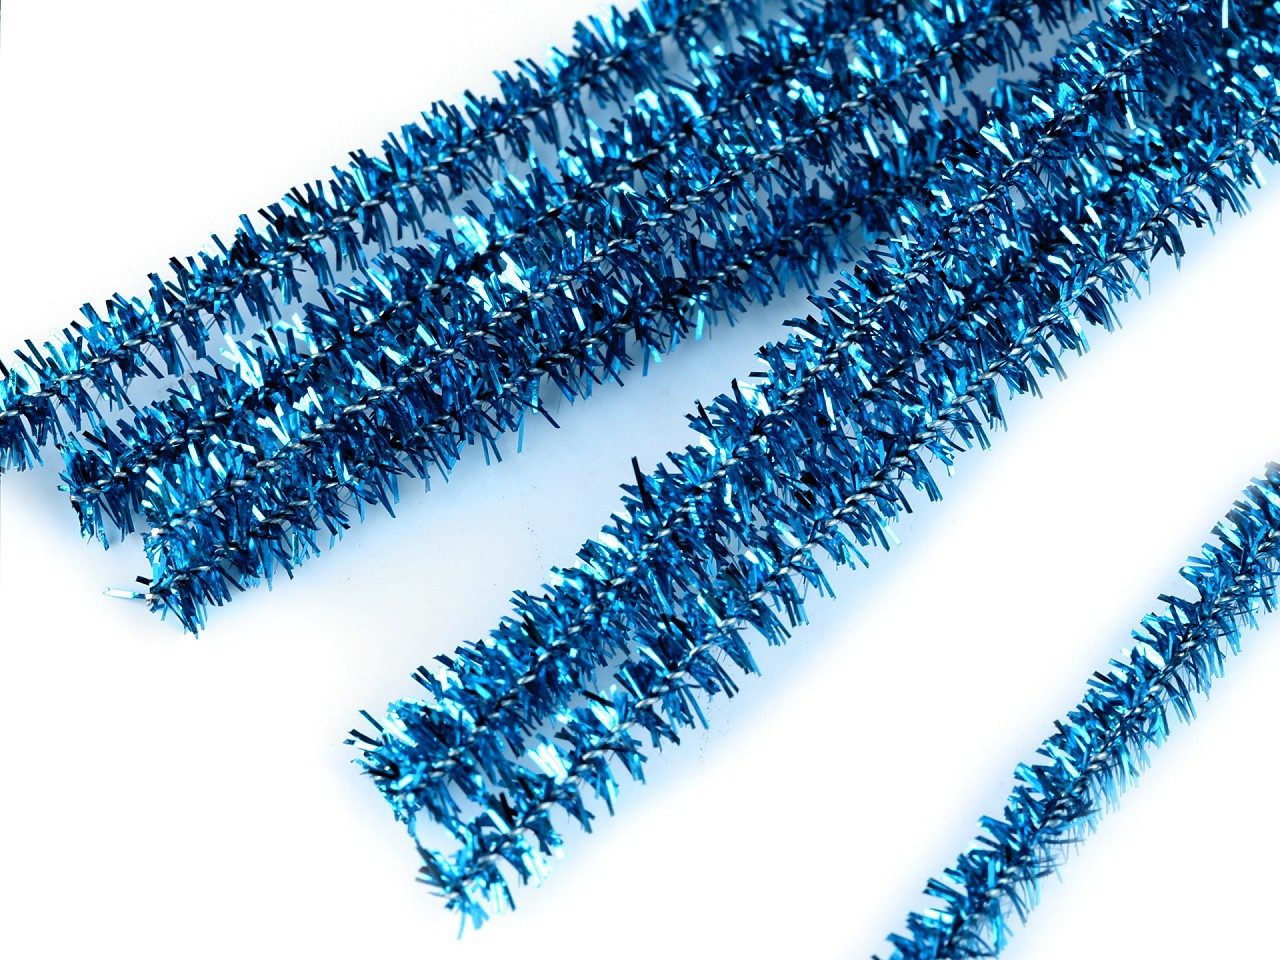 Chlupaté modelovací lurexové drátky Ø6 mm délka 30 cm, barva B009 modrá sytá